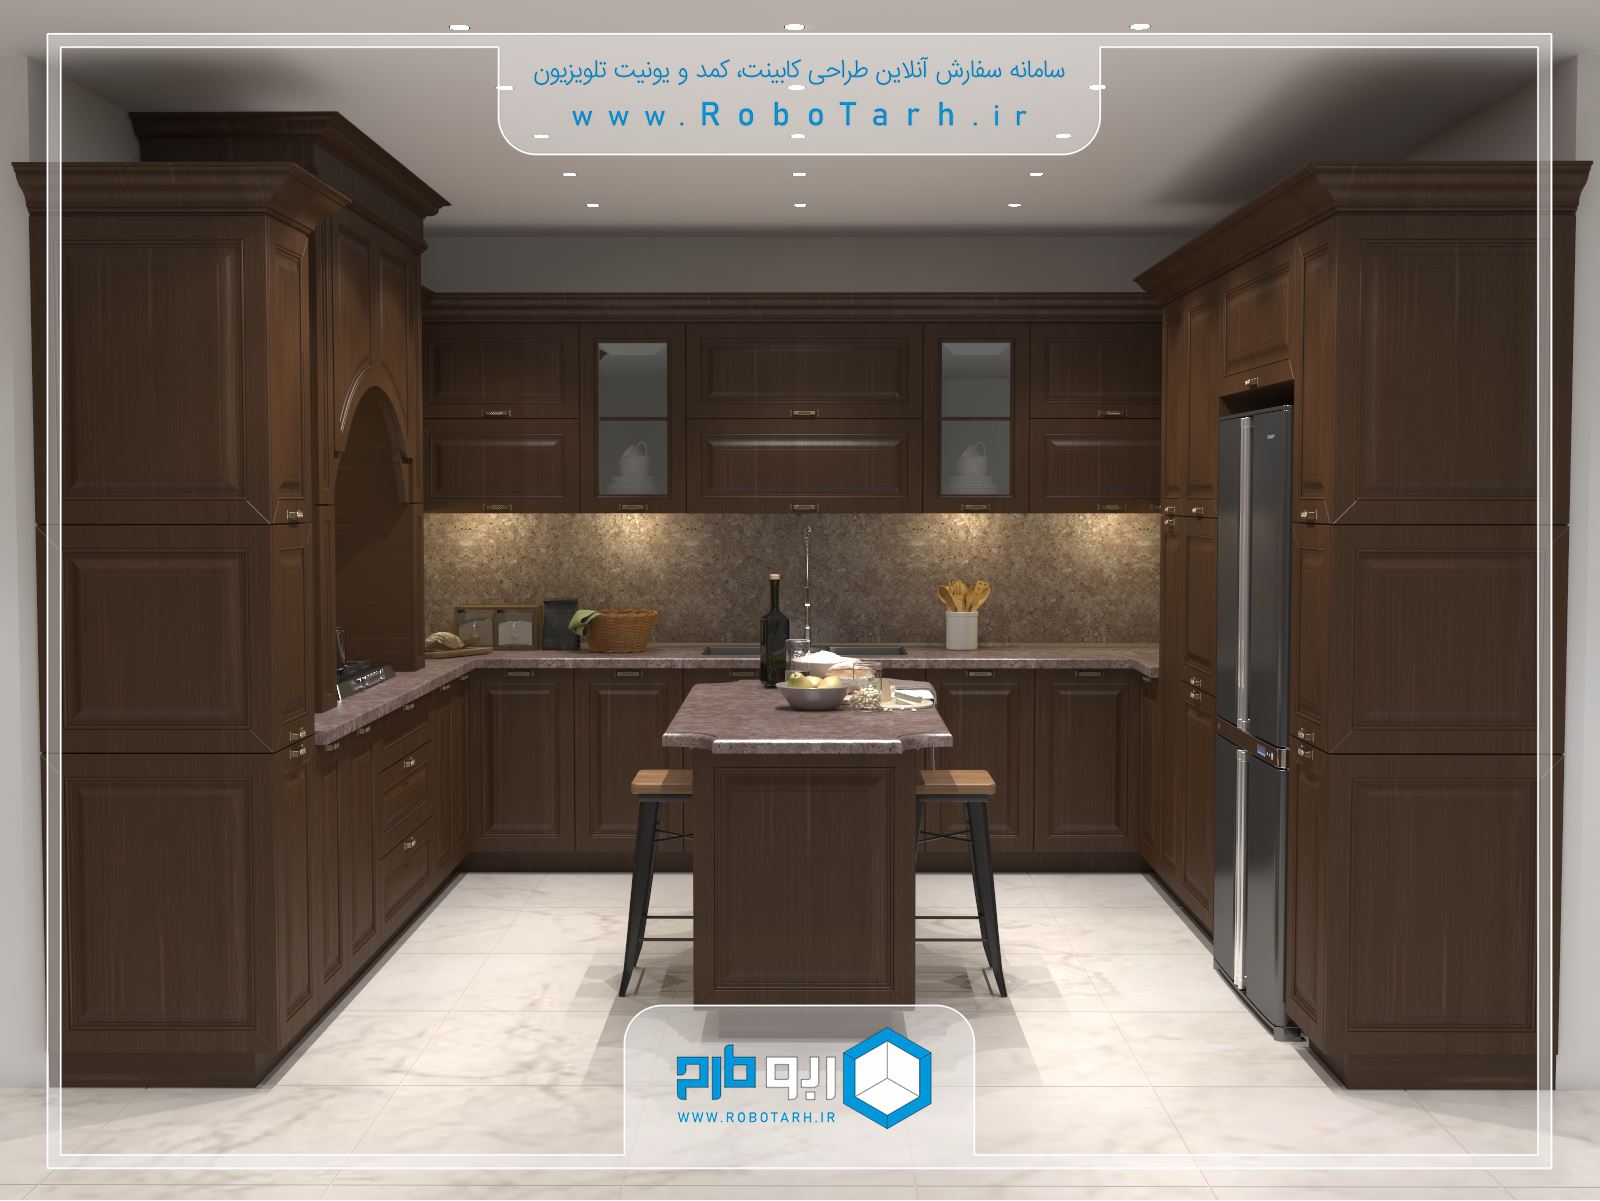 طراحی کابینت آشپزخانه ای به سبک کلاسیک ( ممبران ) و رنگ قهوه ای با چیدمان یو شکل - ربوطرح